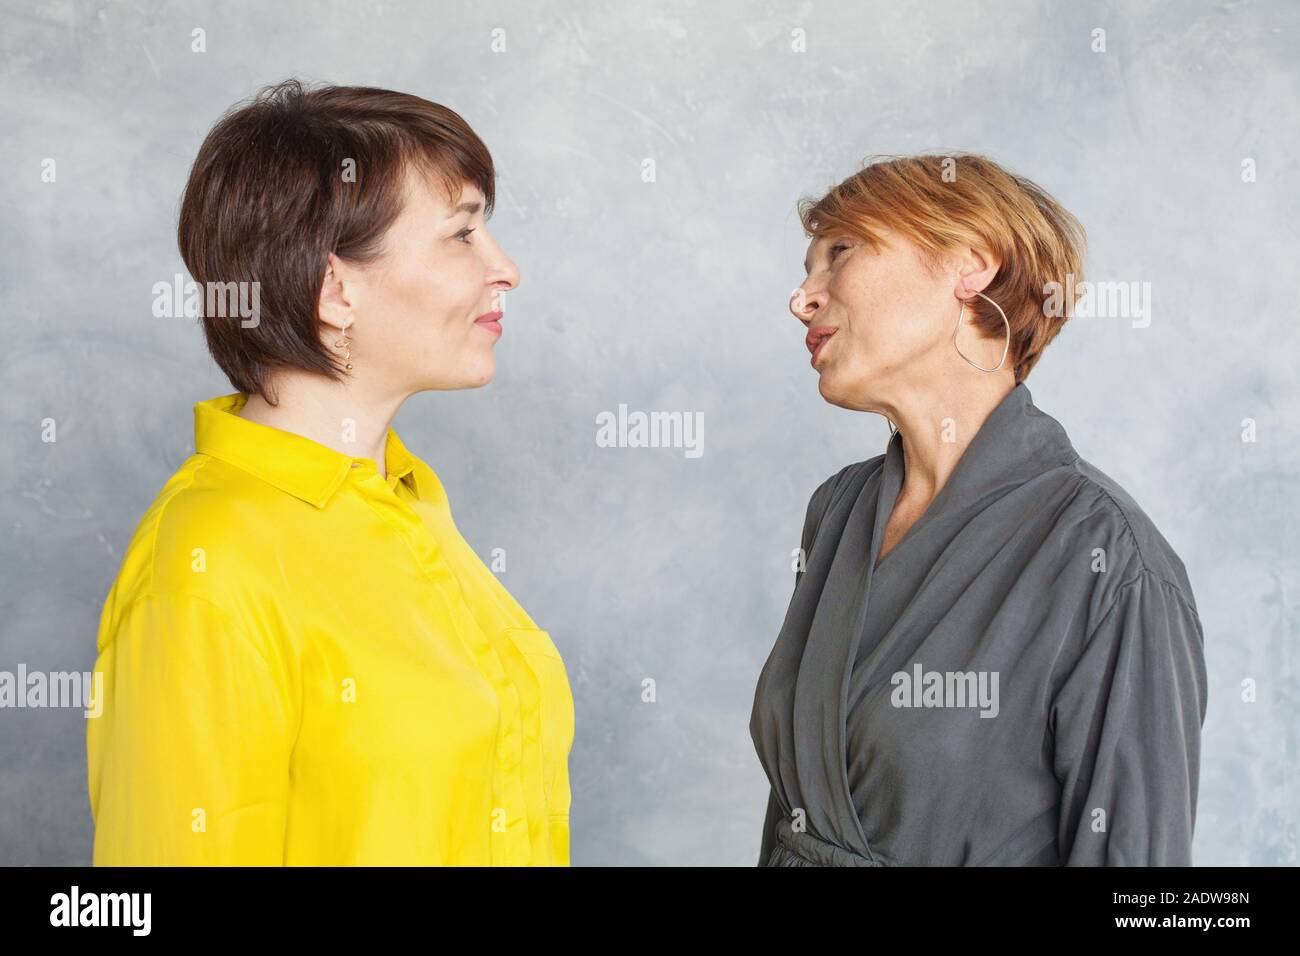 Gerne reife Frauen chatten und suchen und auf grauem Hintergrund. Zwei  Damen, die 45 und 60 Jahre alt Porträt Stockfotografie - Alamy